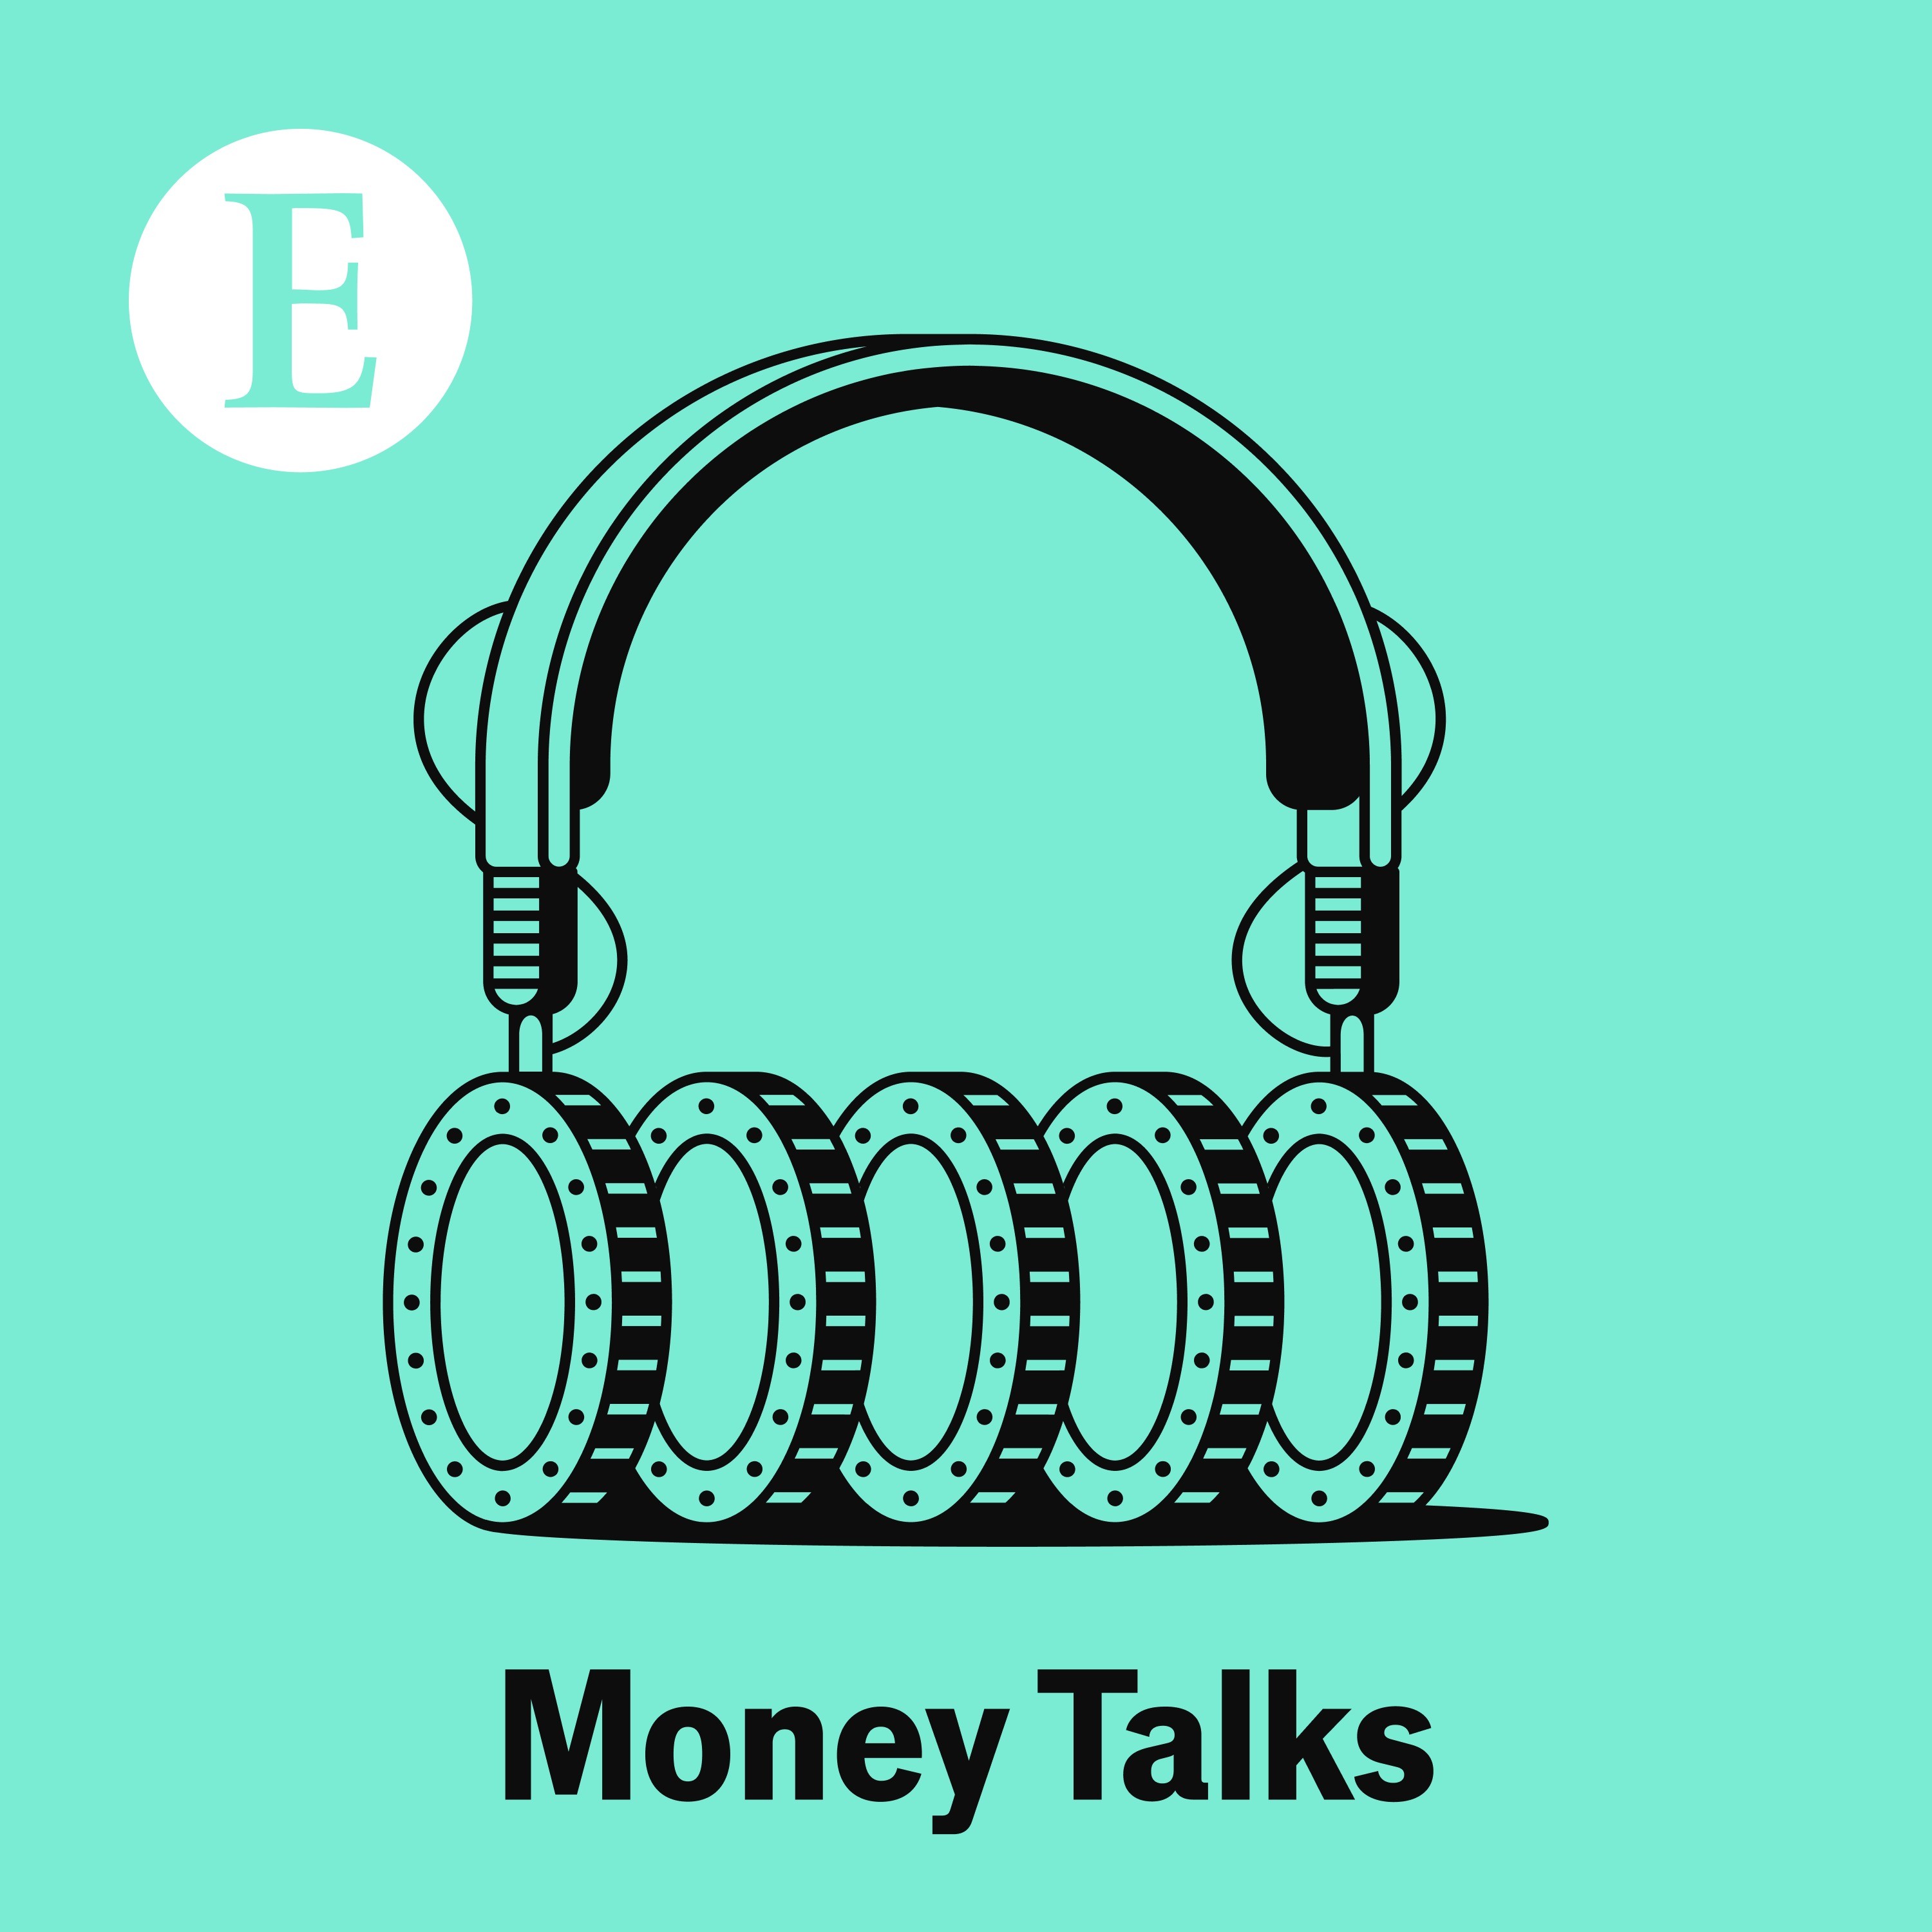 Money Talks from The Economist:The Economist